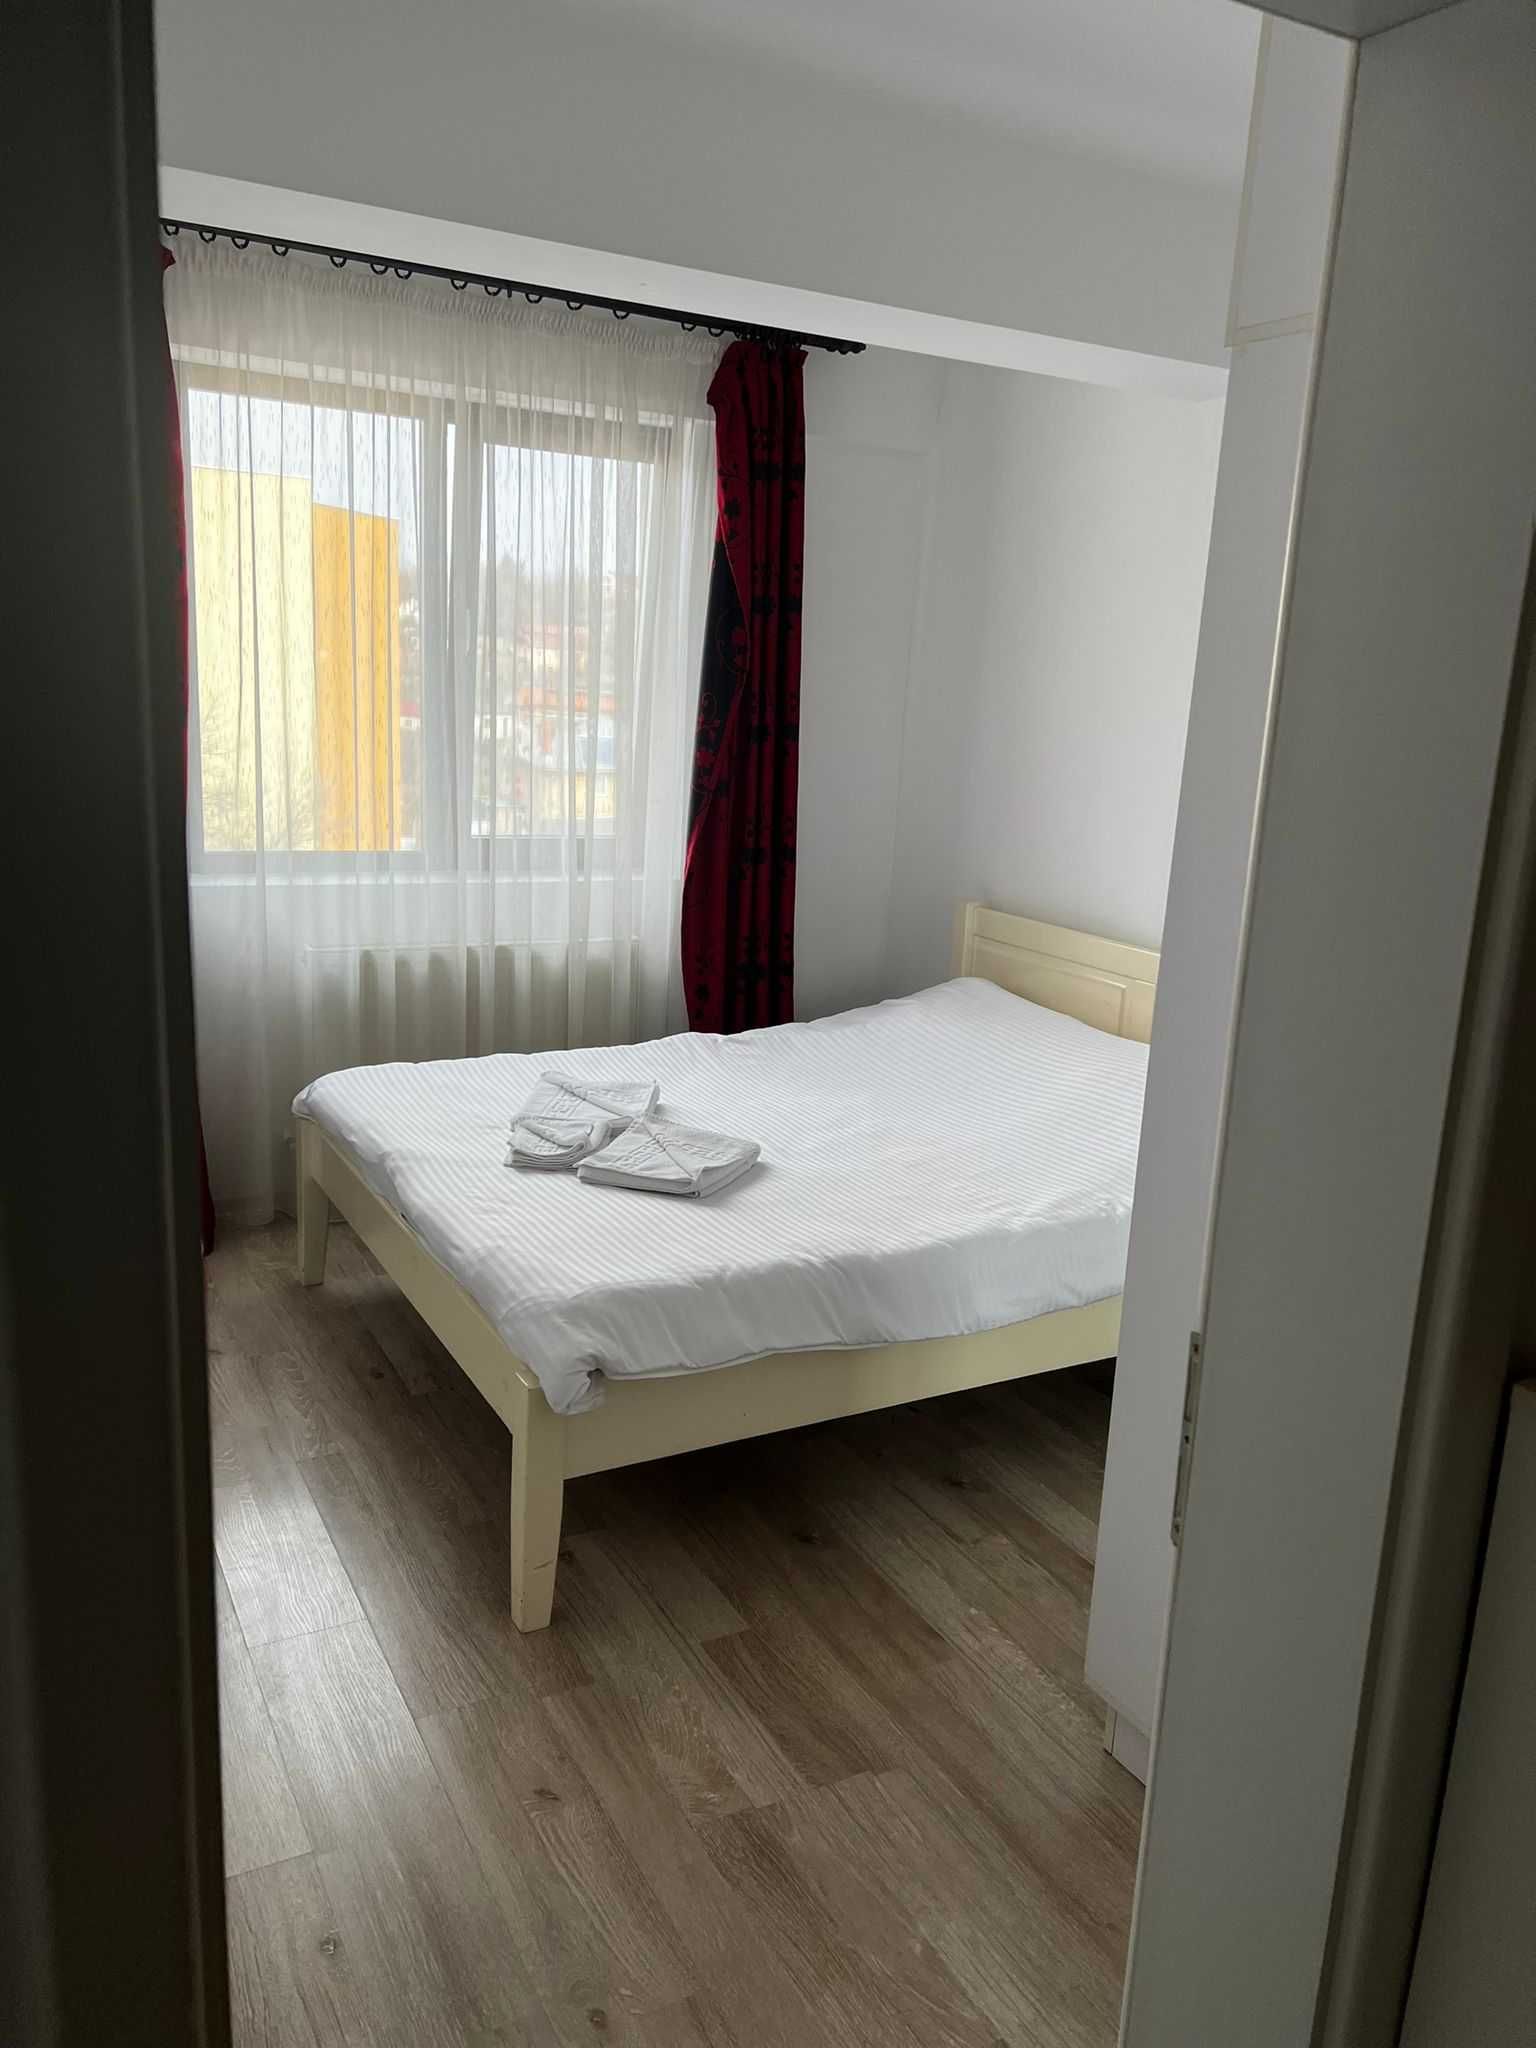 Apartamente in Regim Hotelier Palas/Tudor/Newton 1-2-3 camere